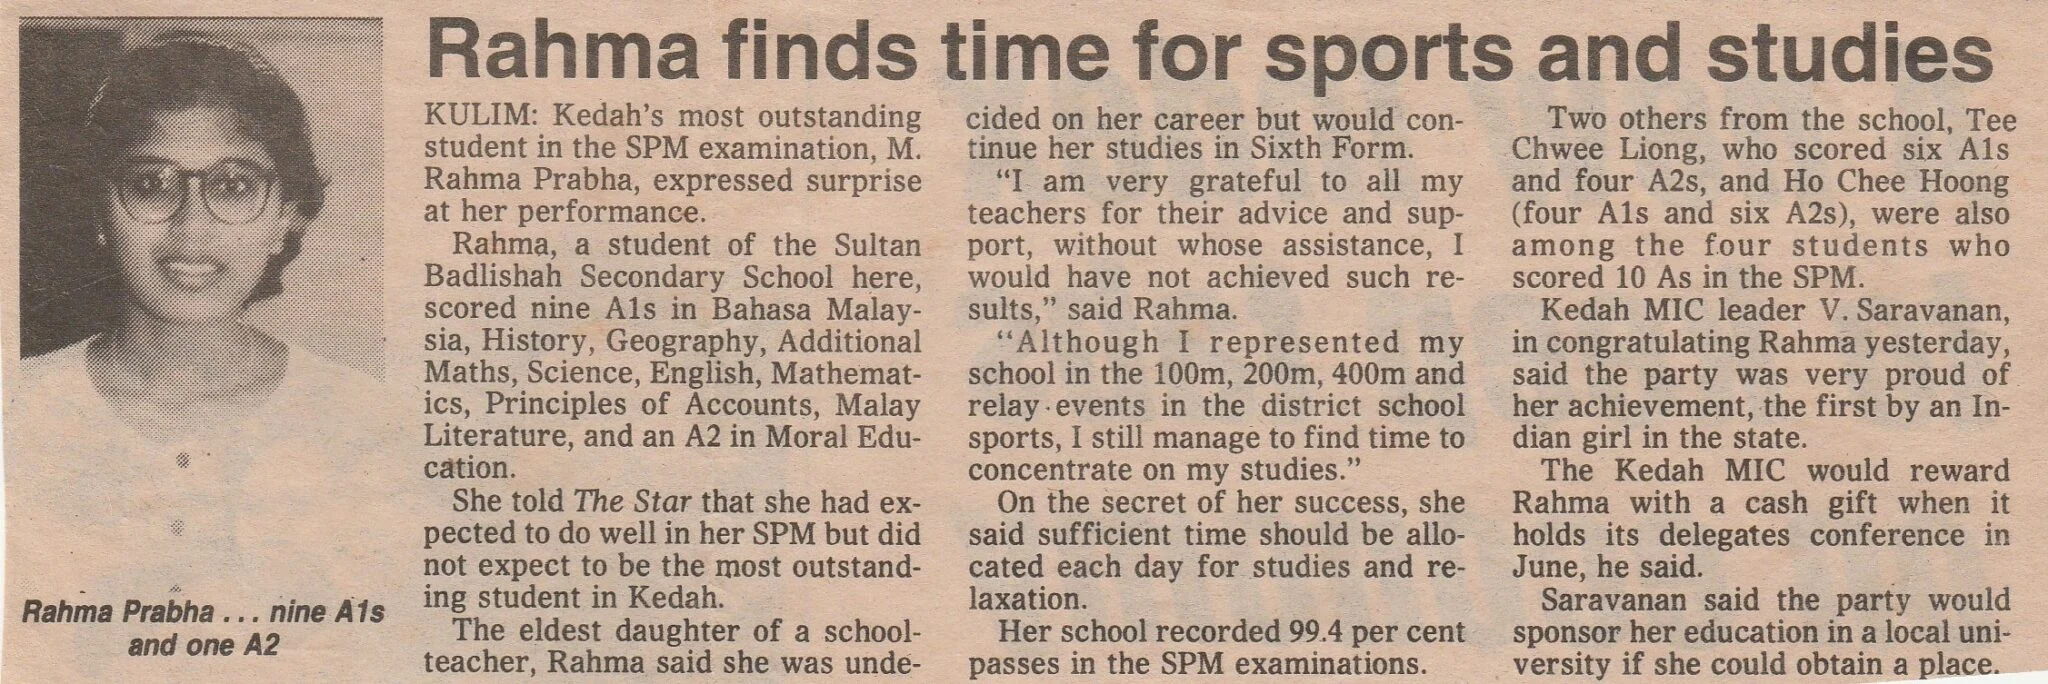 1993 Sijil Pelajaran Malaysia Rama Prabha